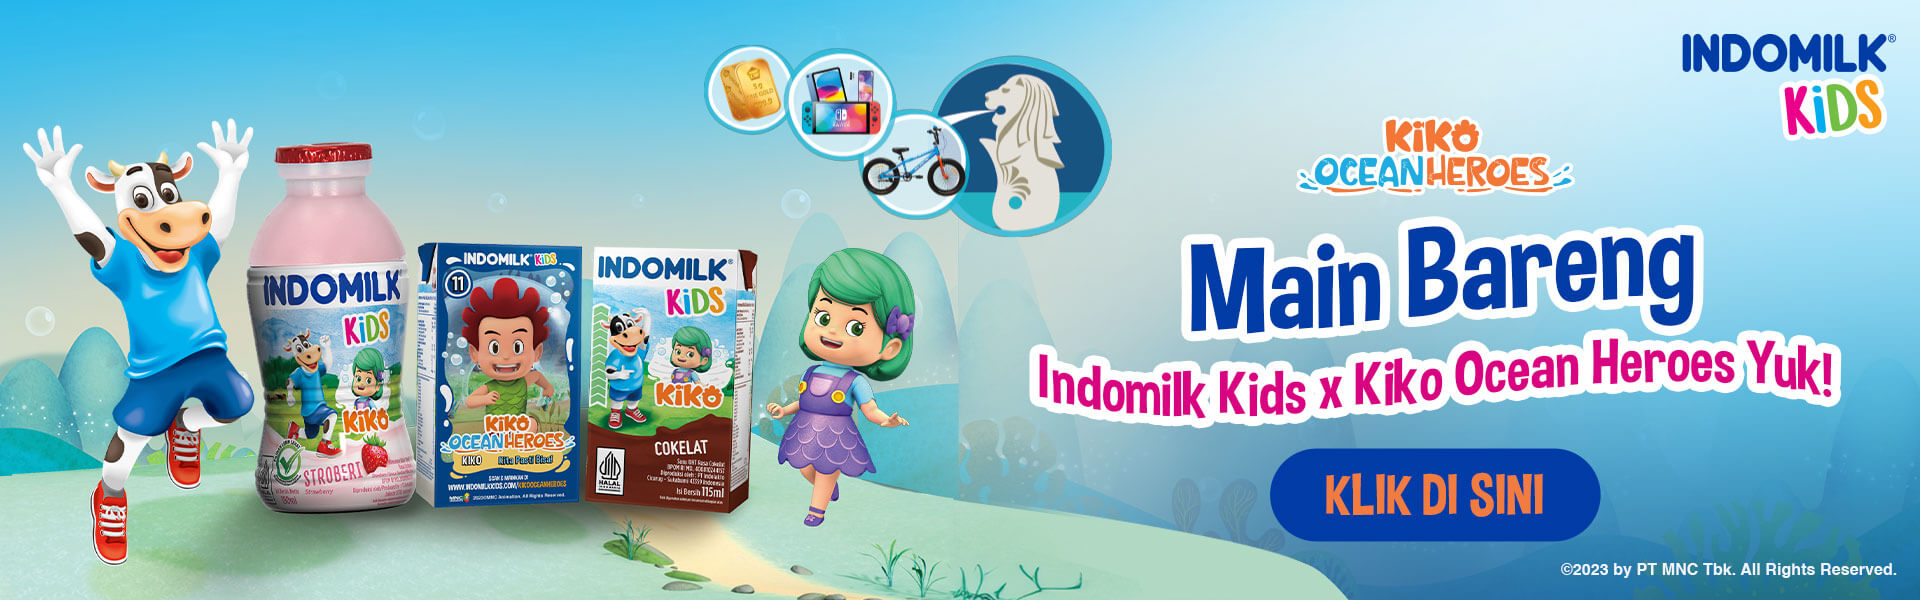 Indomilk Kids - Kiko Ocean Heroes